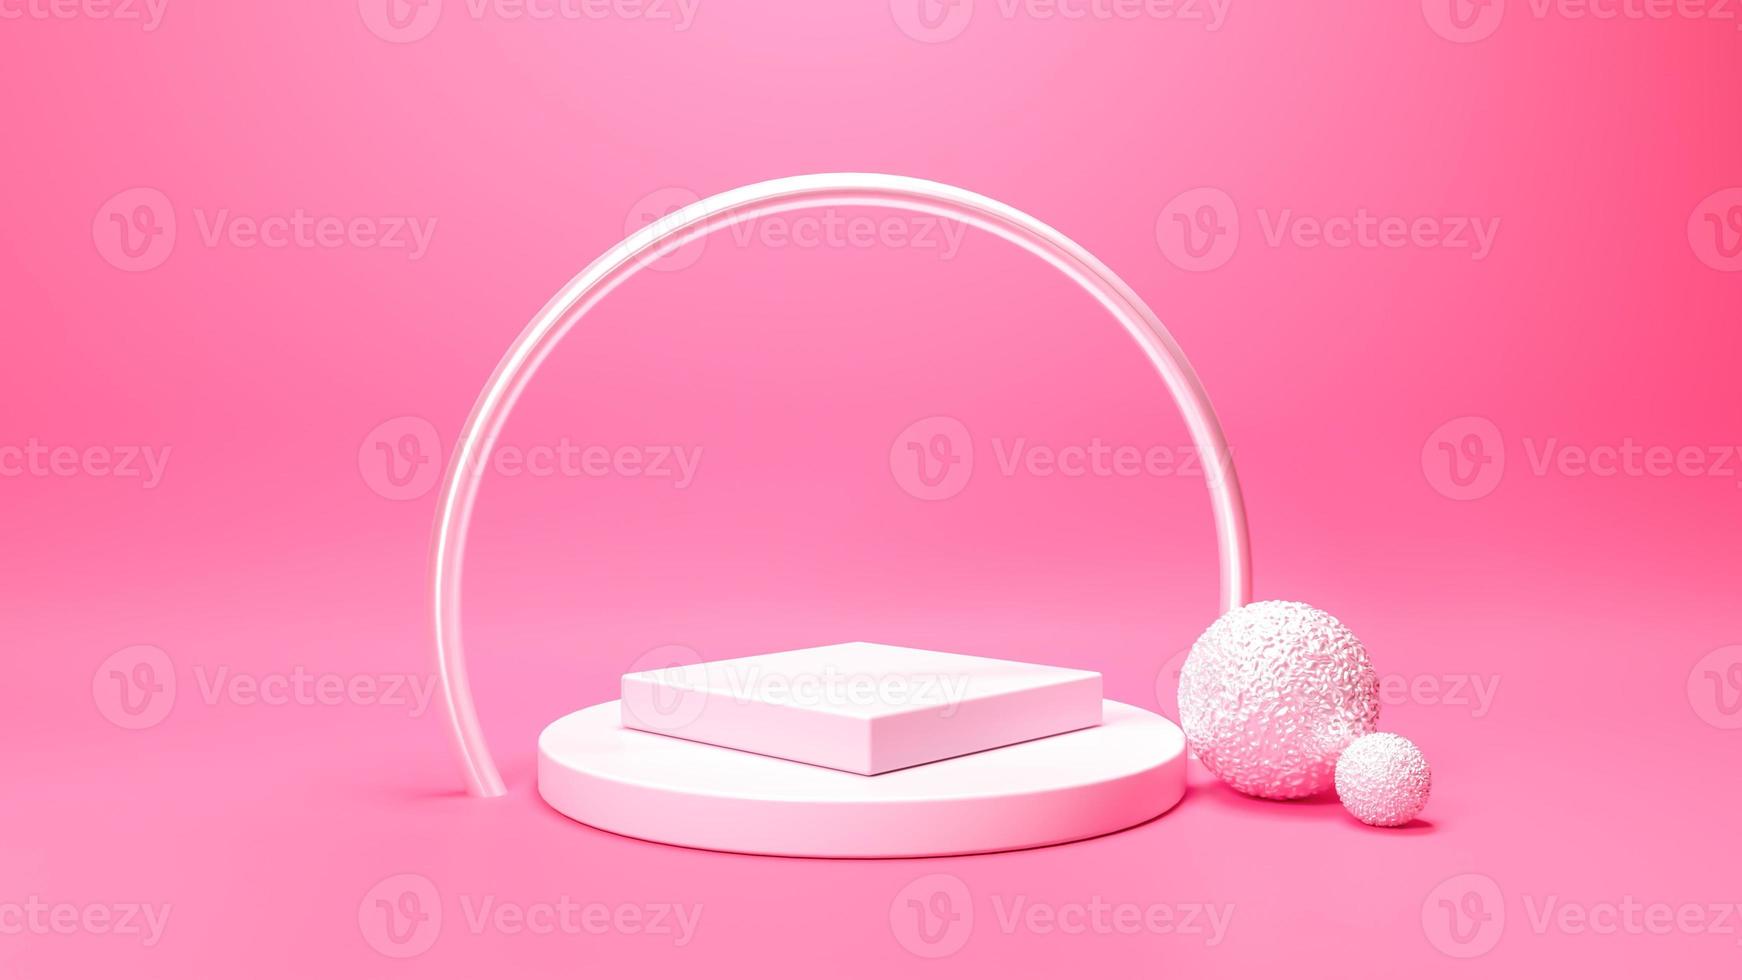 Conjunto de podio 3d arco de acero plateado bolas metalizadas fondo de fondo rosa natural pastel. promoción de productos de verano abstracto sutil de moda. espacio de copia renders 3d ilustración 3d hermoso resumen foto